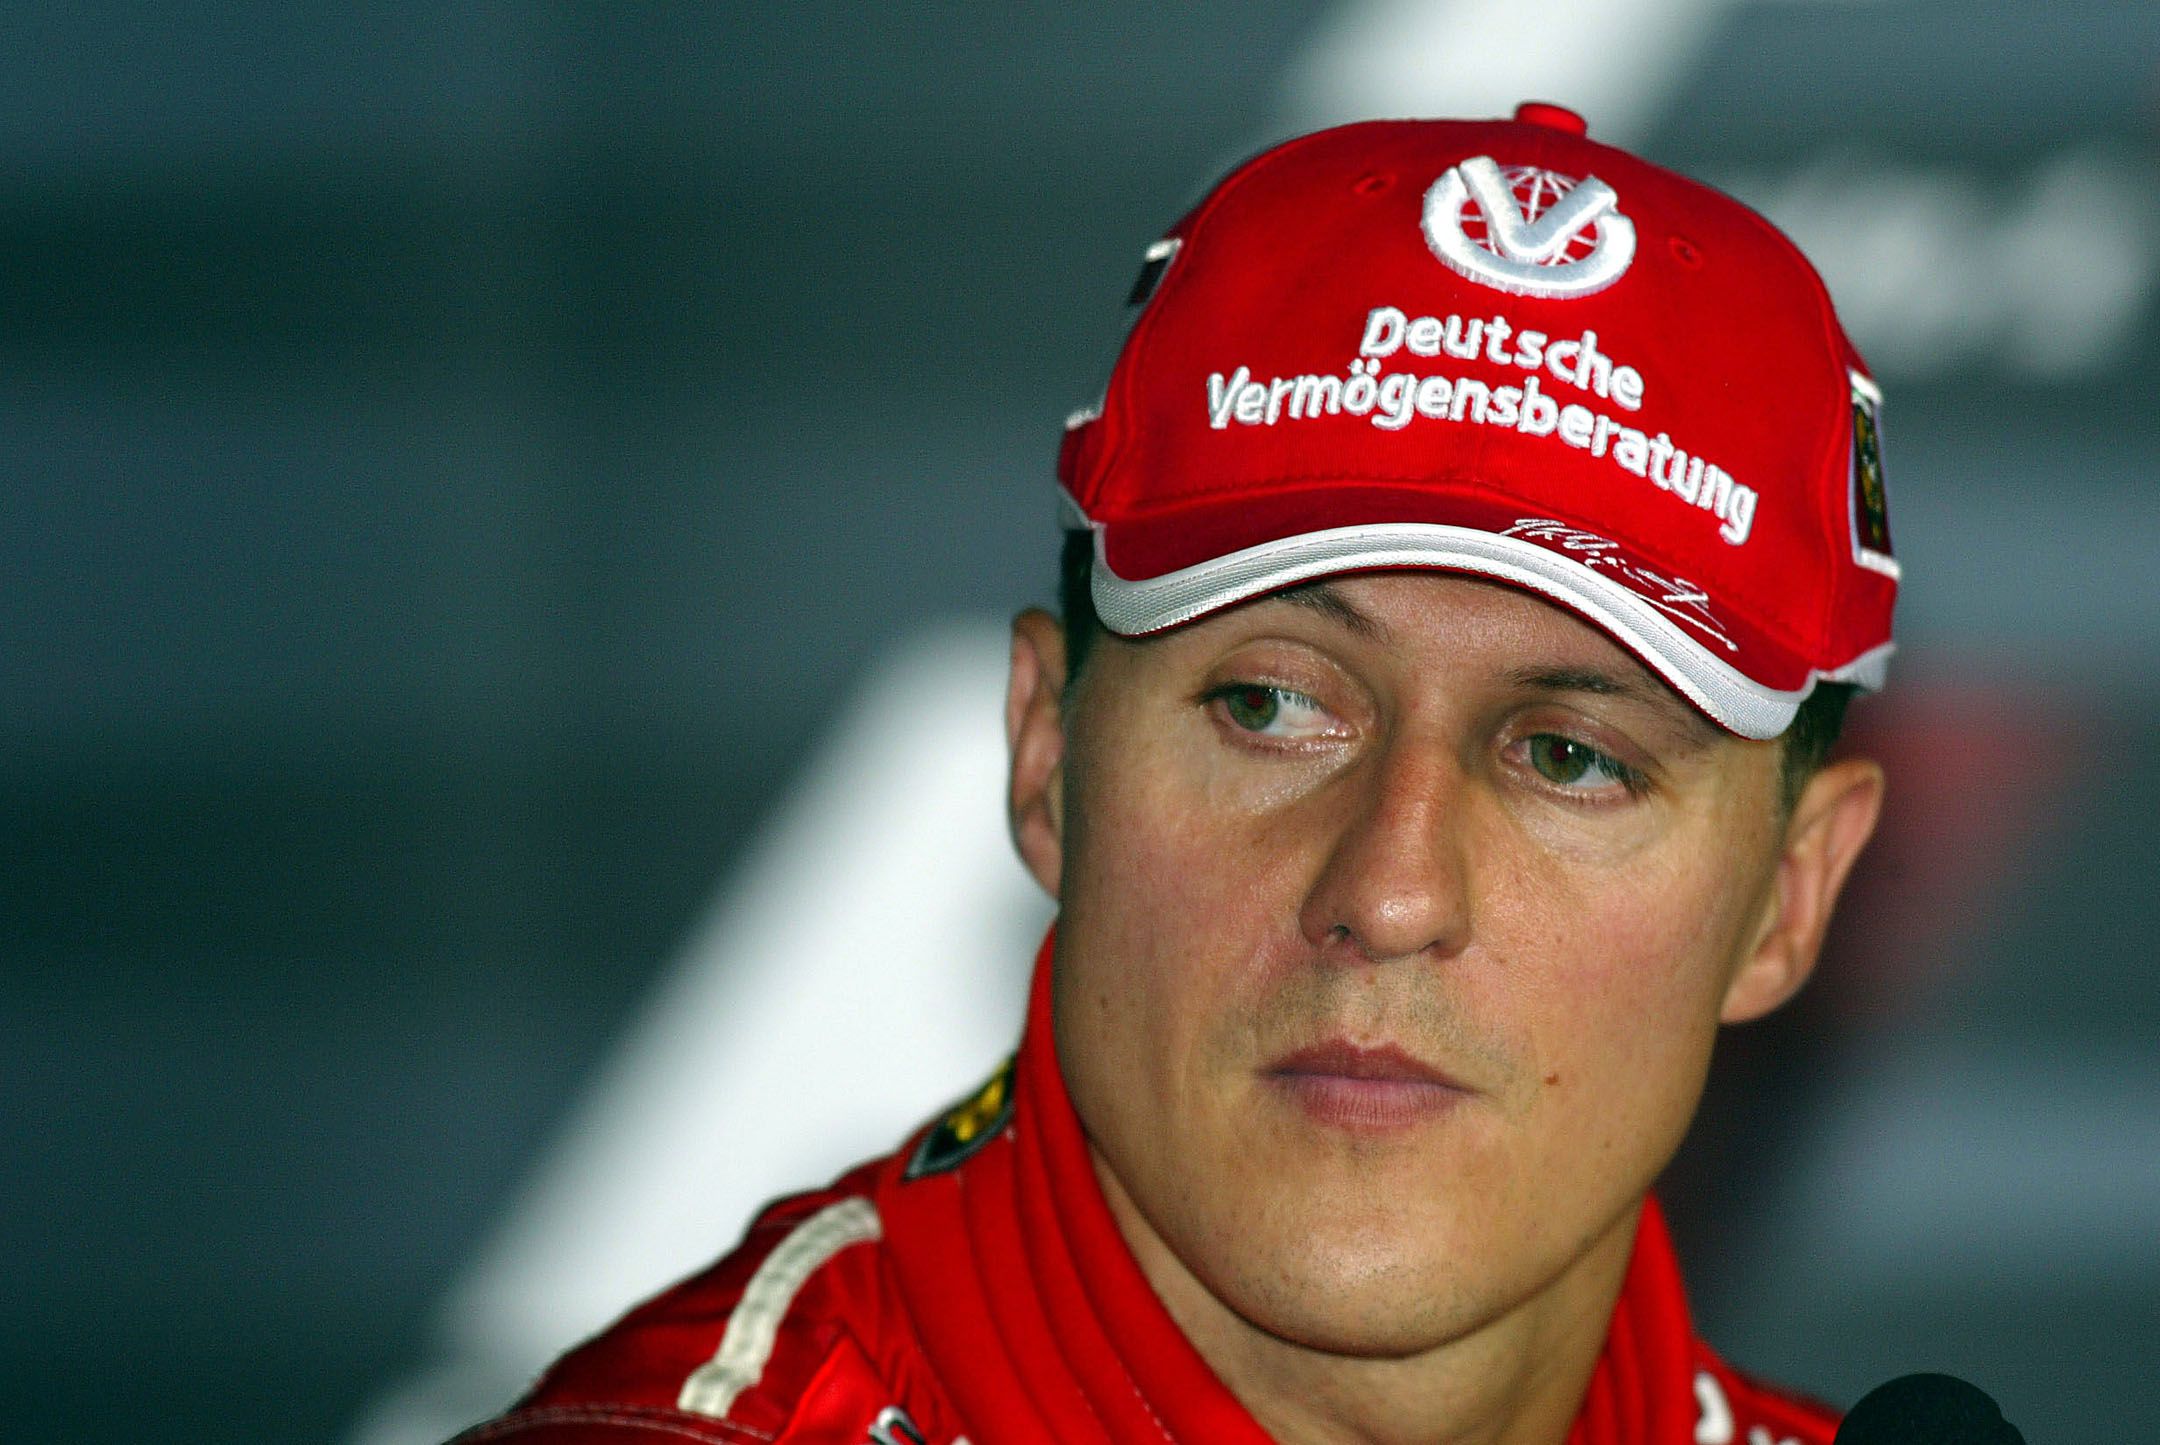 A hétszeres F1-es vbébéelső expilóta, a német Michael Schumacher a Ferrarinál a világ legjobban kereső sportolója volt / Fotó: Northfoto